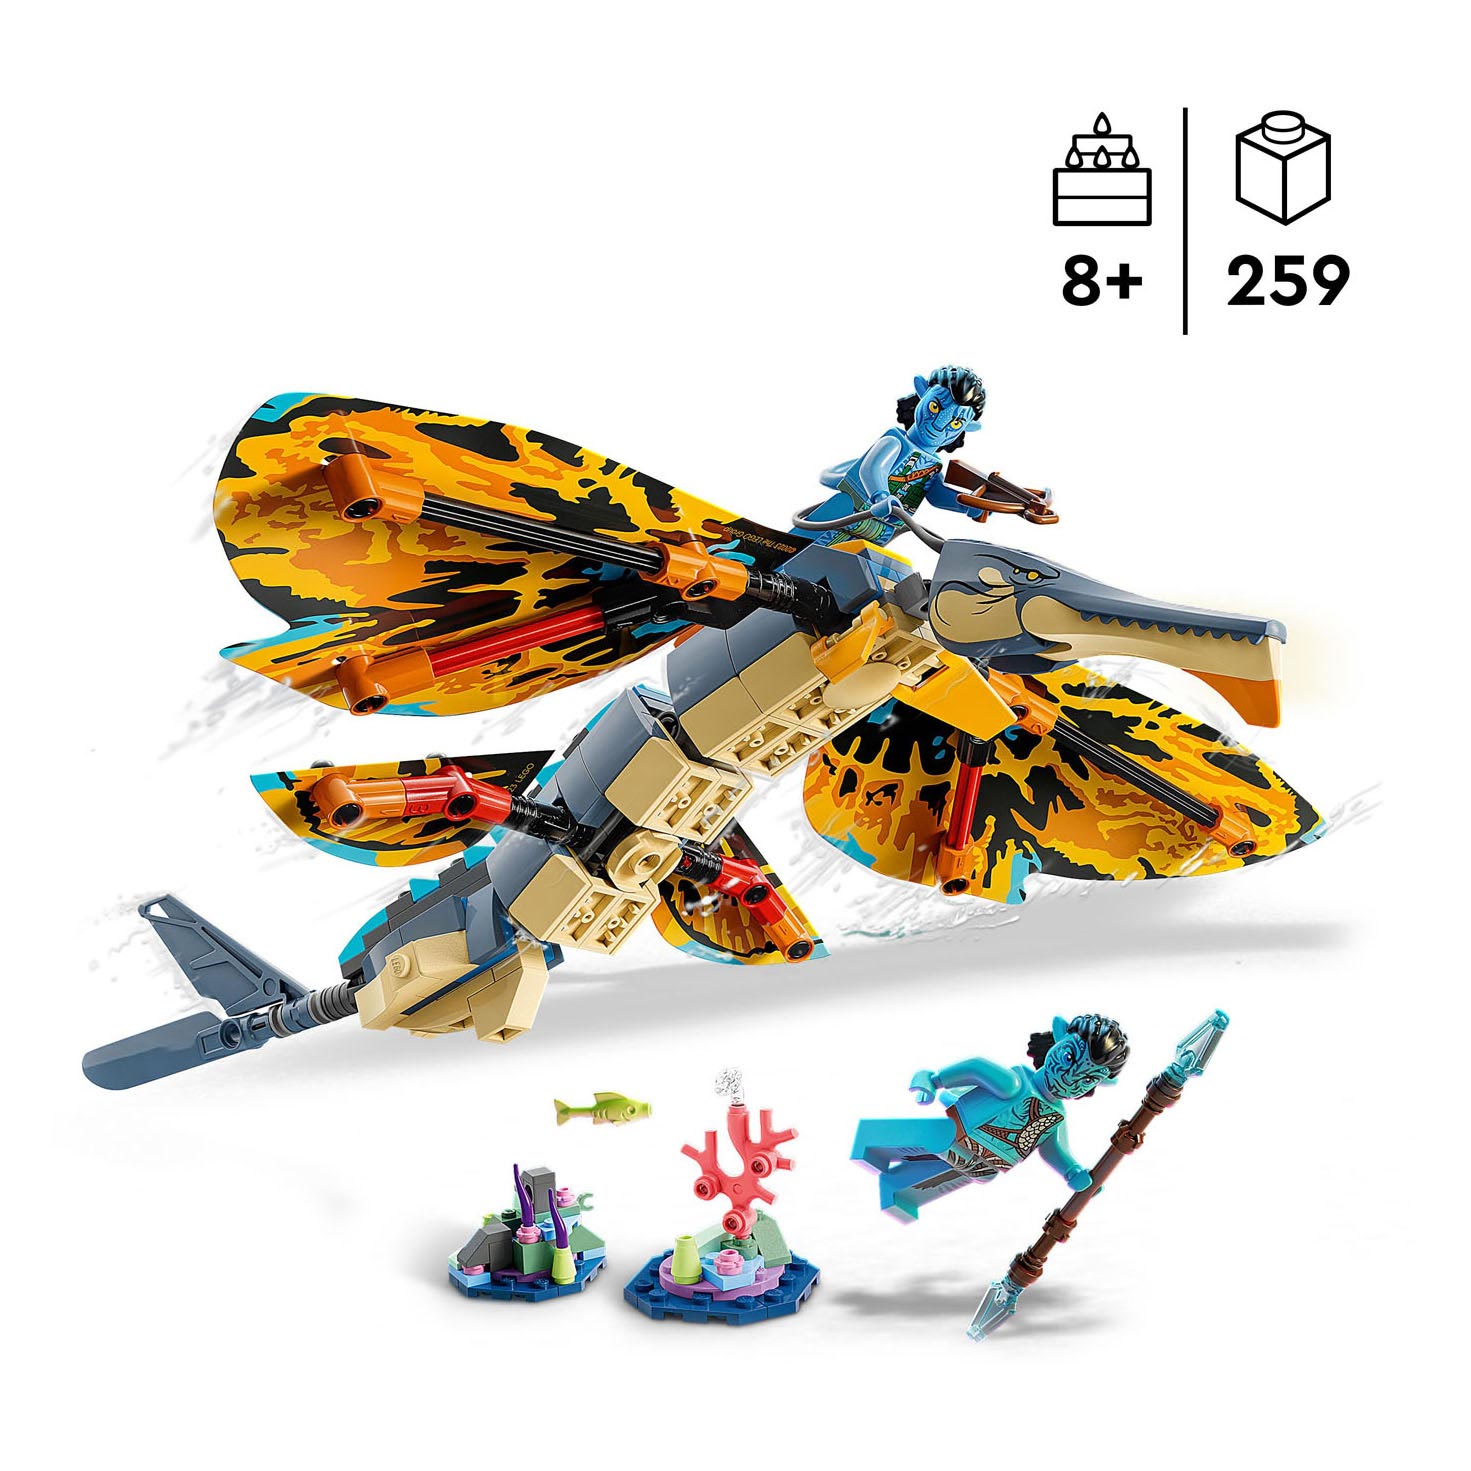 LEGO Avatar 75576 ​​​​Skimwing-Abenteuer